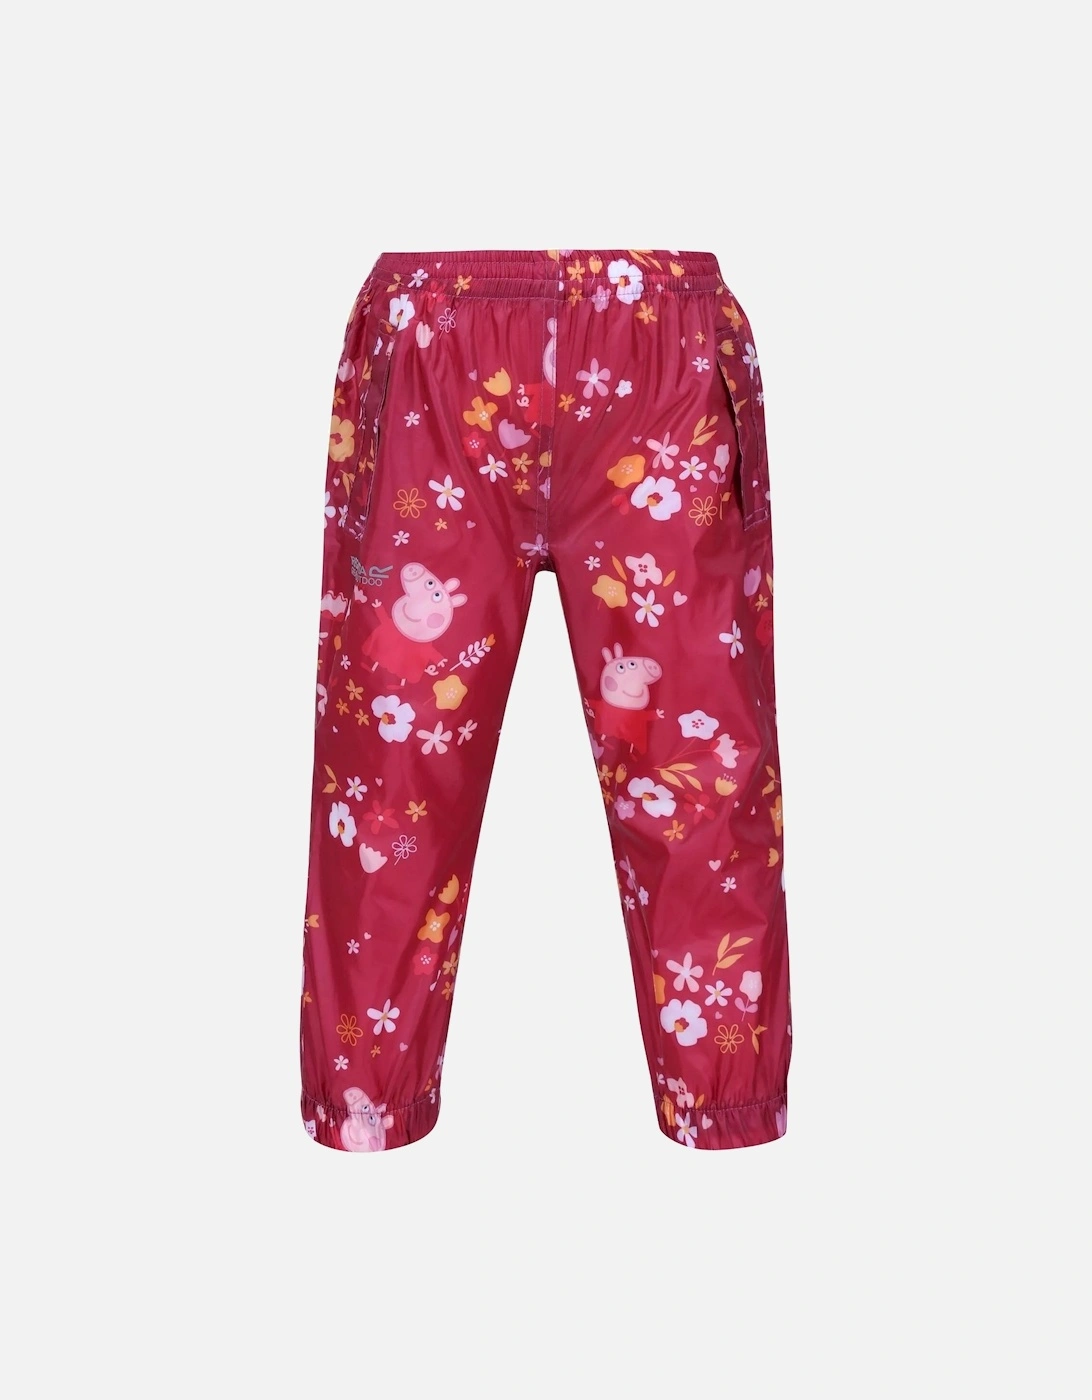 Childrens/Kids Floral Peppa Pig Packaway Waterproof Trousers, 6 of 5